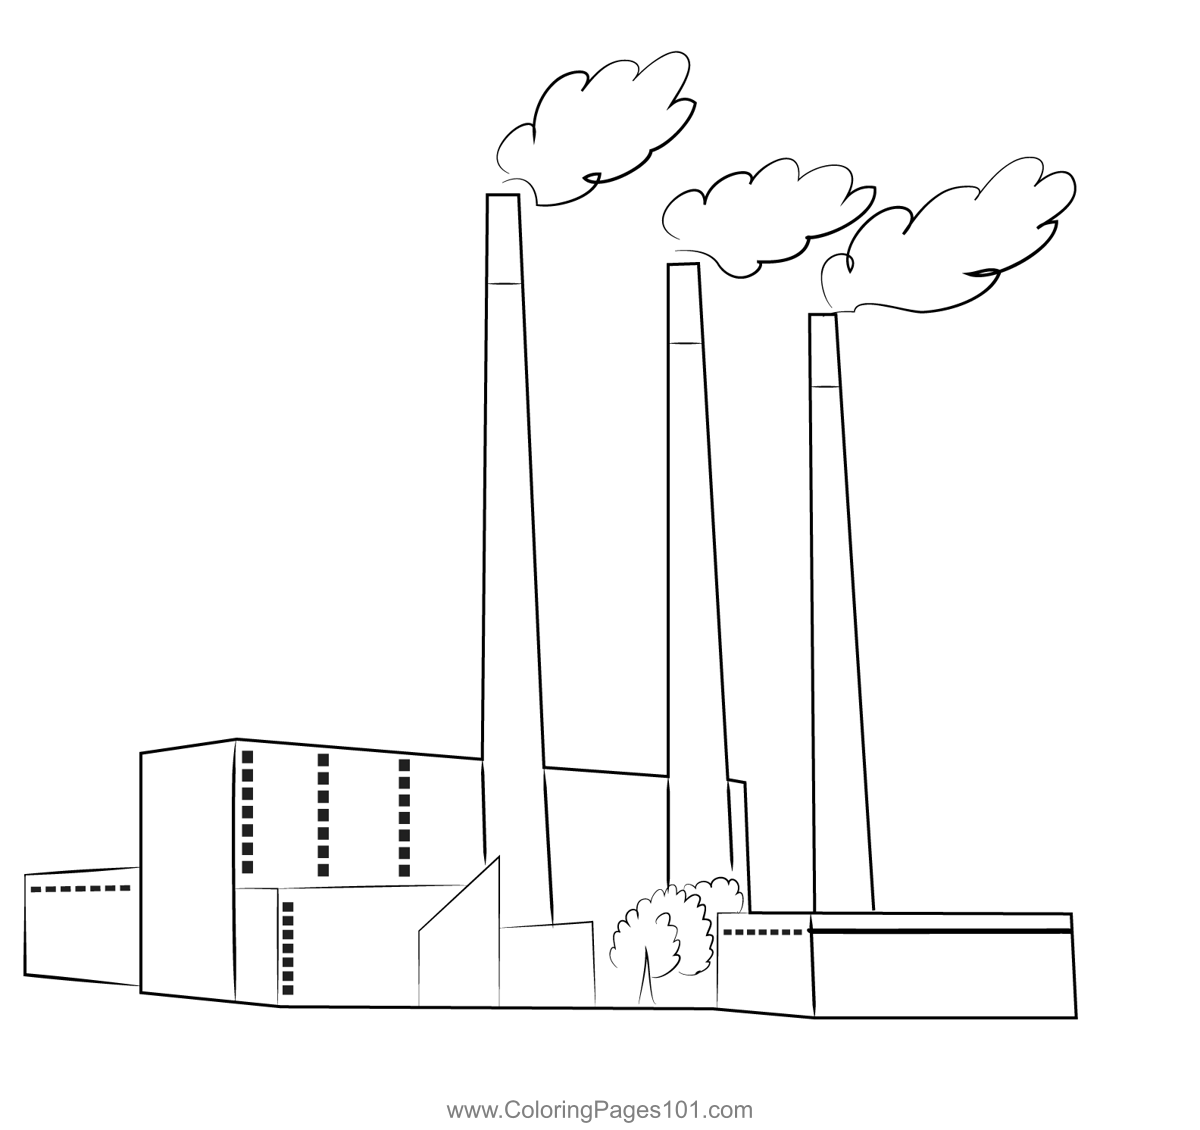 Coal Power Plant